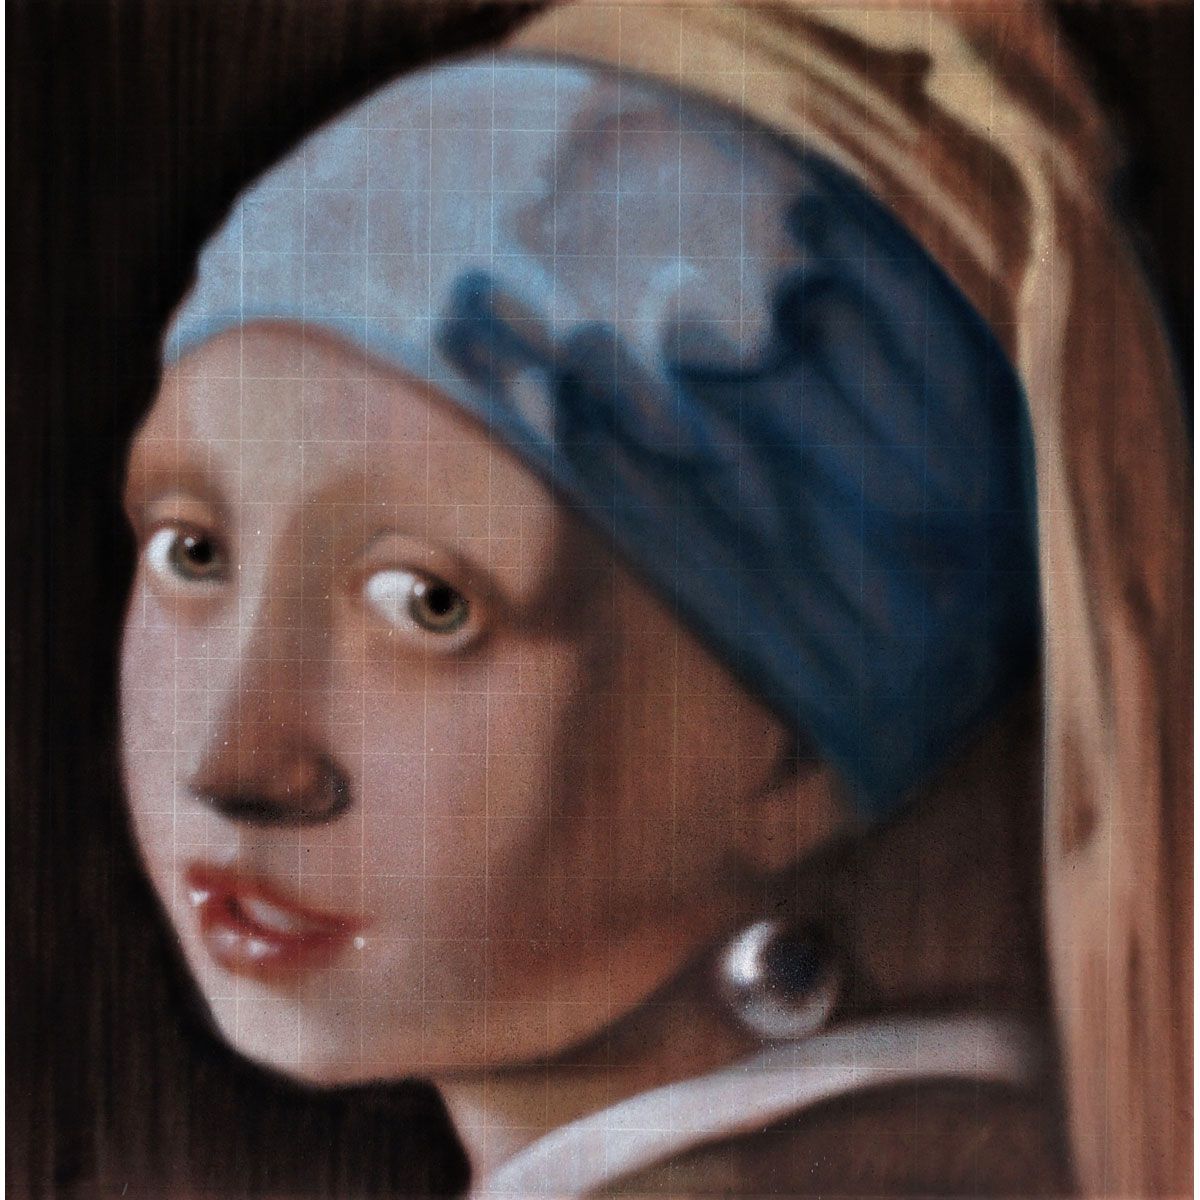 Null Andrea RAVO MATTONI, Italiener, geboren 1981

Nach Vermeers "Mädchen mit de&hellip;